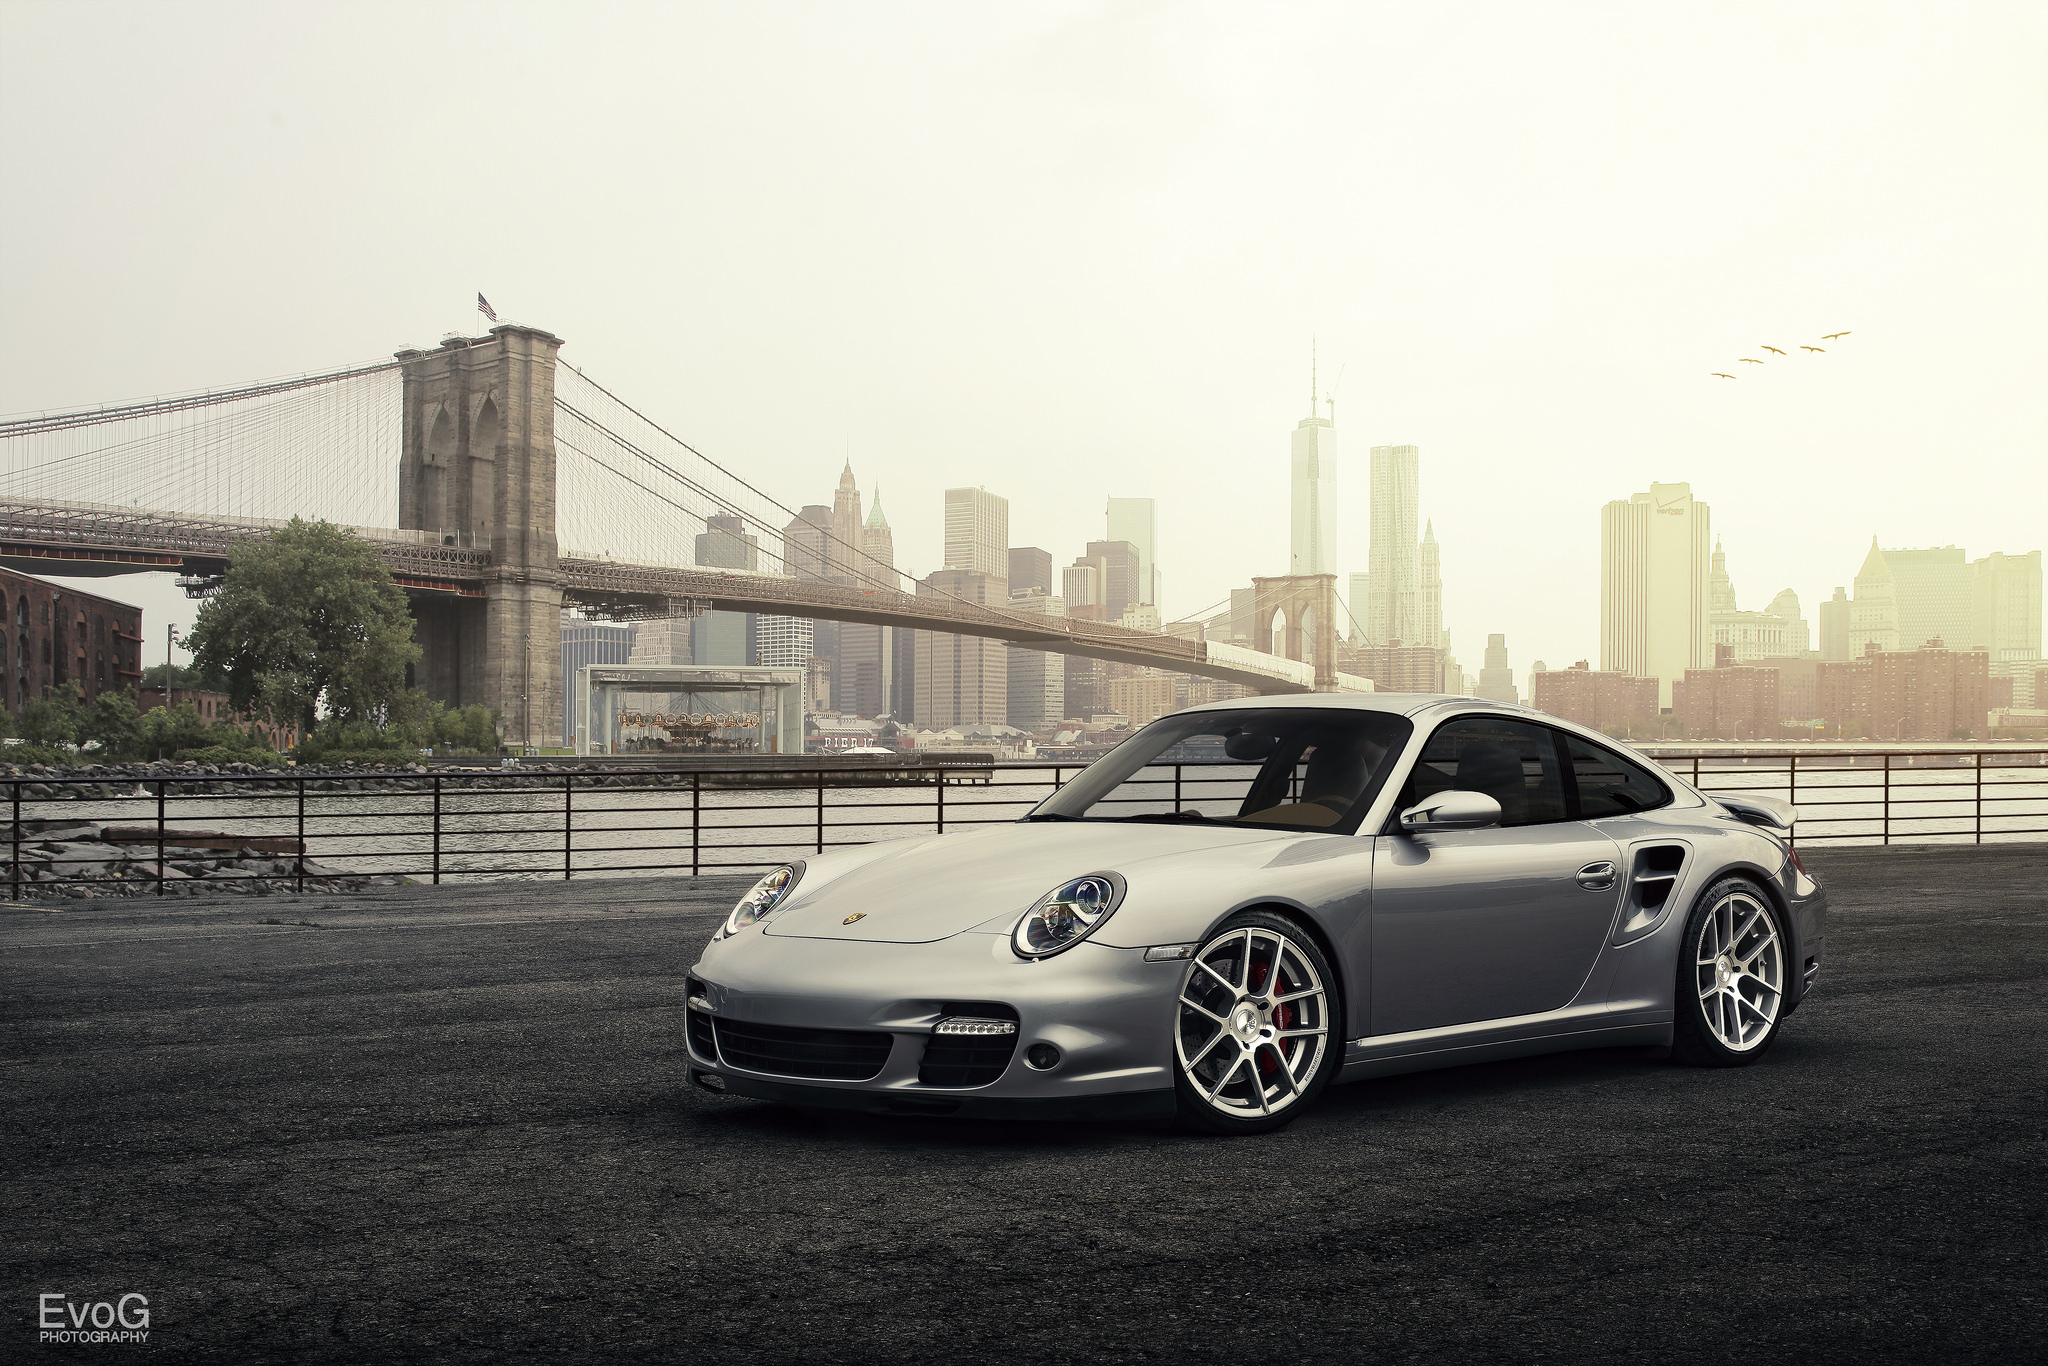 Download mobile wallpaper Porsche, Car, Porsche 911, Vehicles, Silver Car, Porsche 911 Turbo for free.